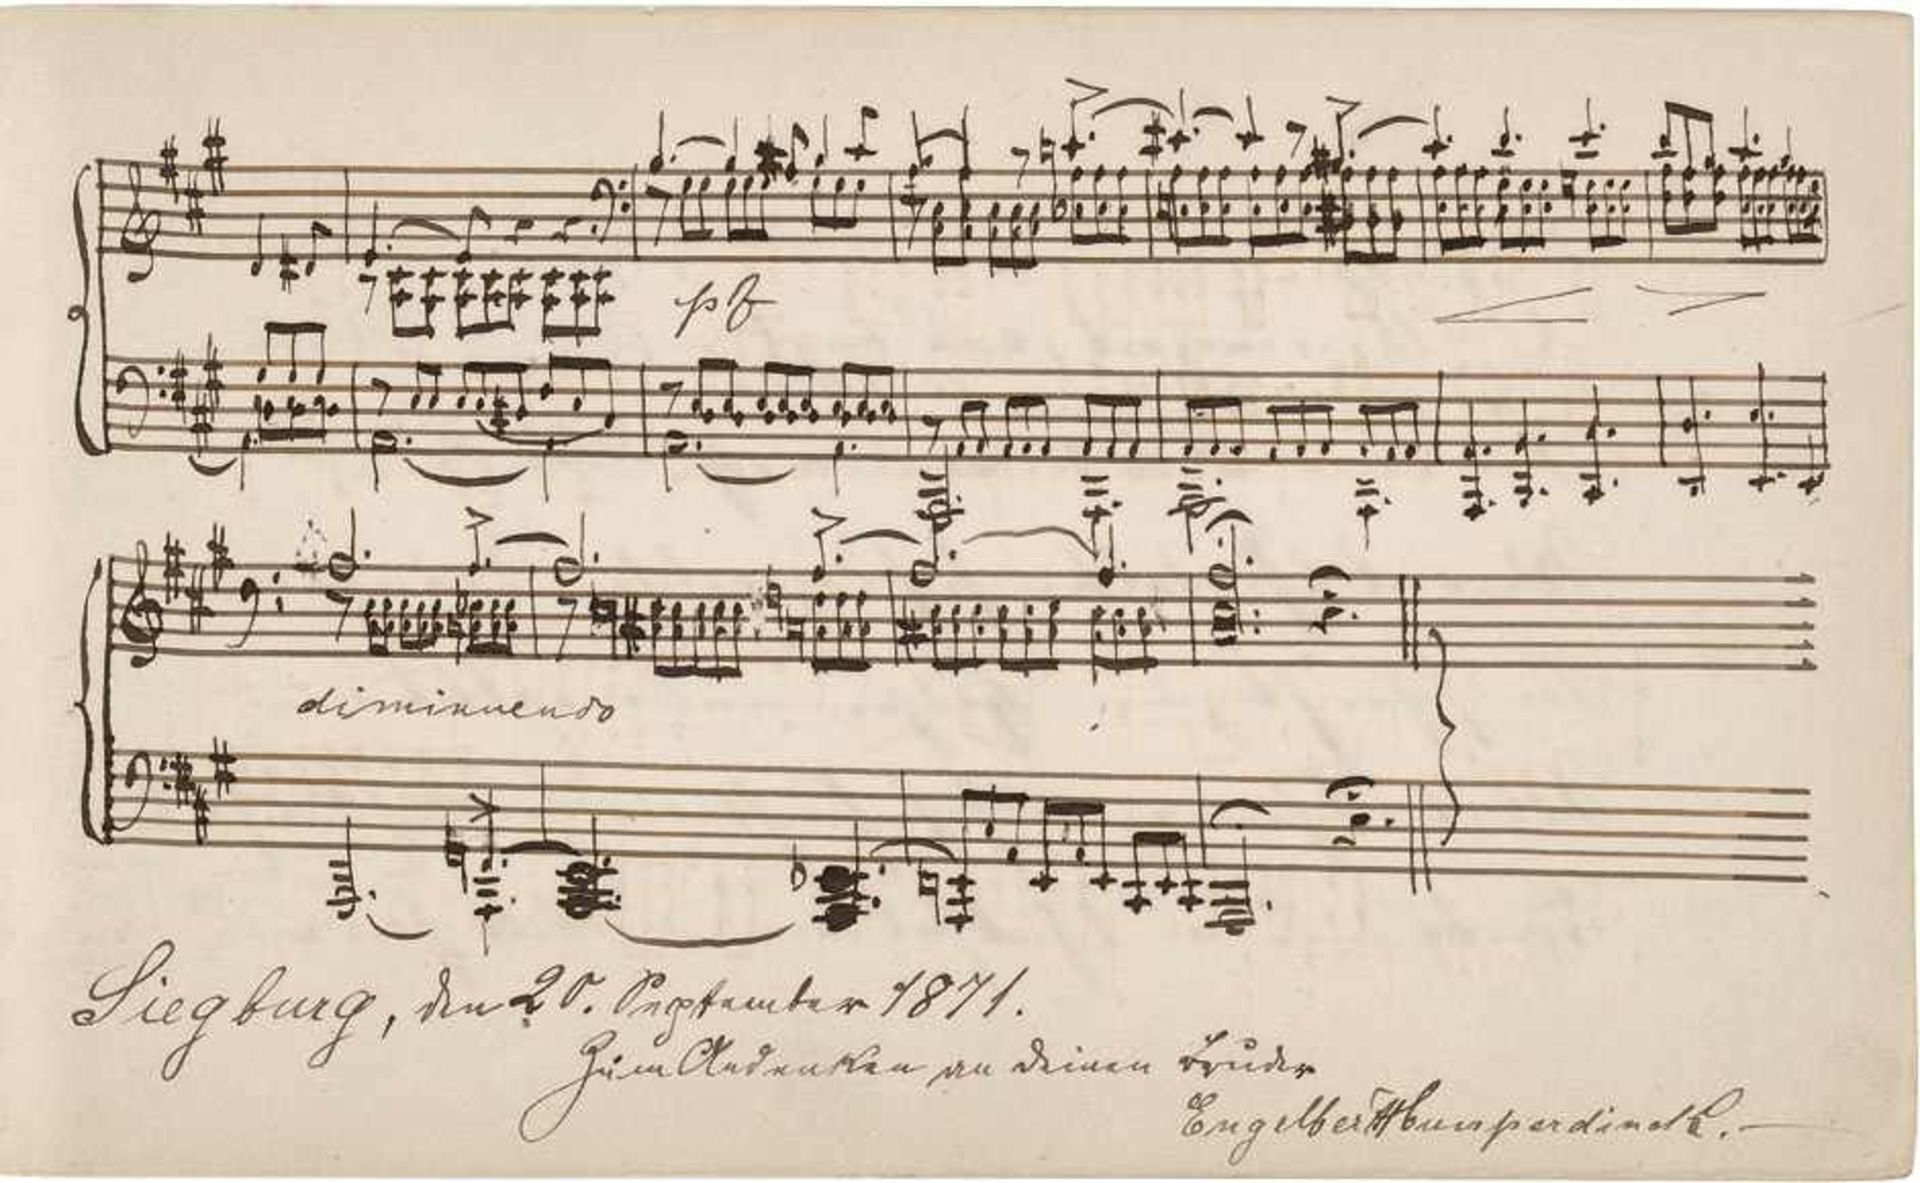 Humperdinck, Engelbert: Poesie-Album mit MusikmanuskriptHumperdinck, Engelbert, Komponist (1854-